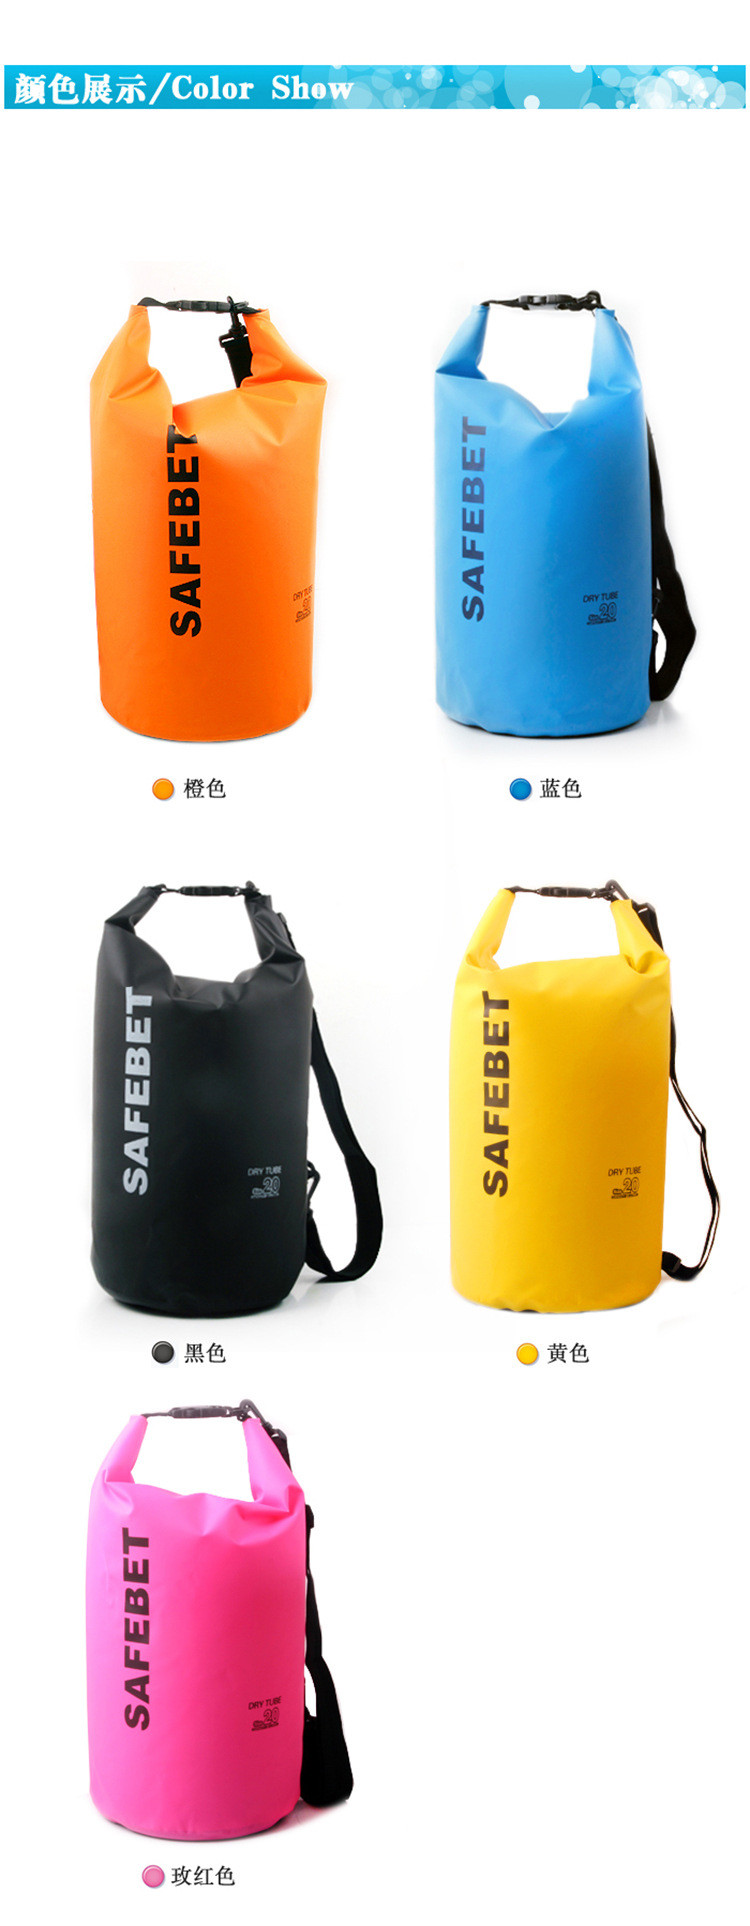 【浙江百货】SAFEBET游泳漂浮装备 衣物防偷袋 防水桶 漂流袋 5L LHC